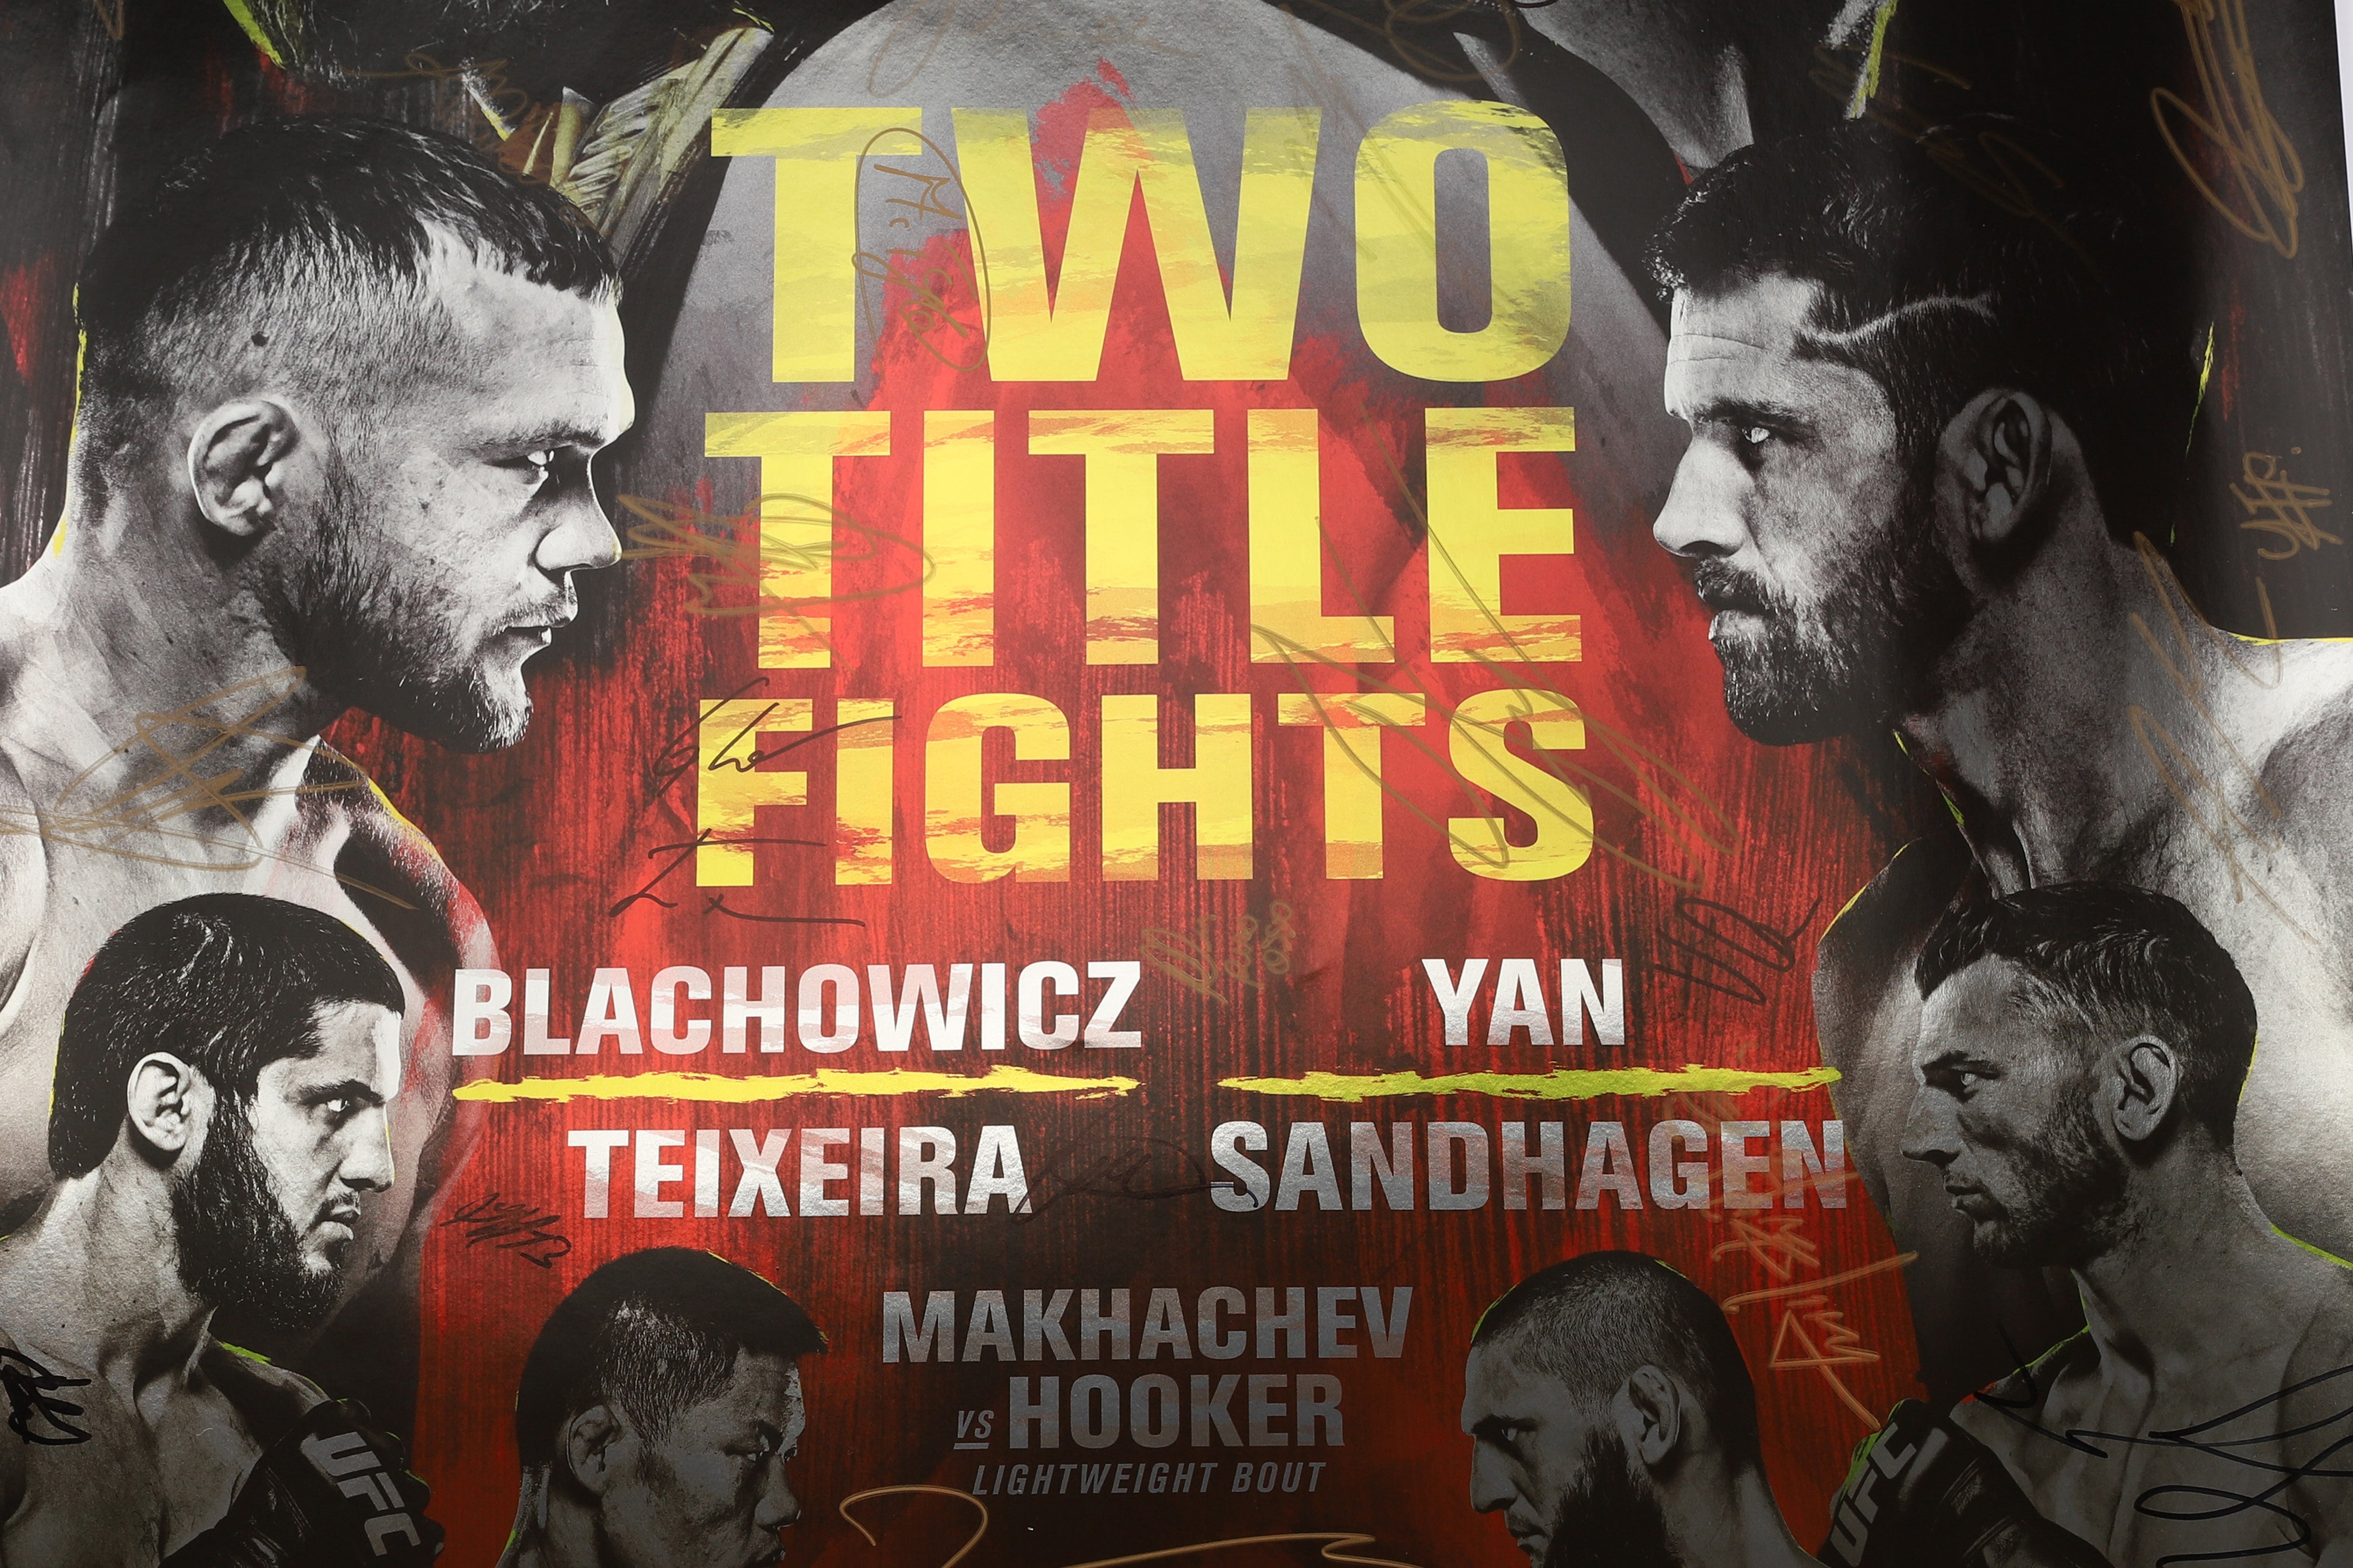 UFC 267: Błachowicz vs Teixeira Autographed Event Poster